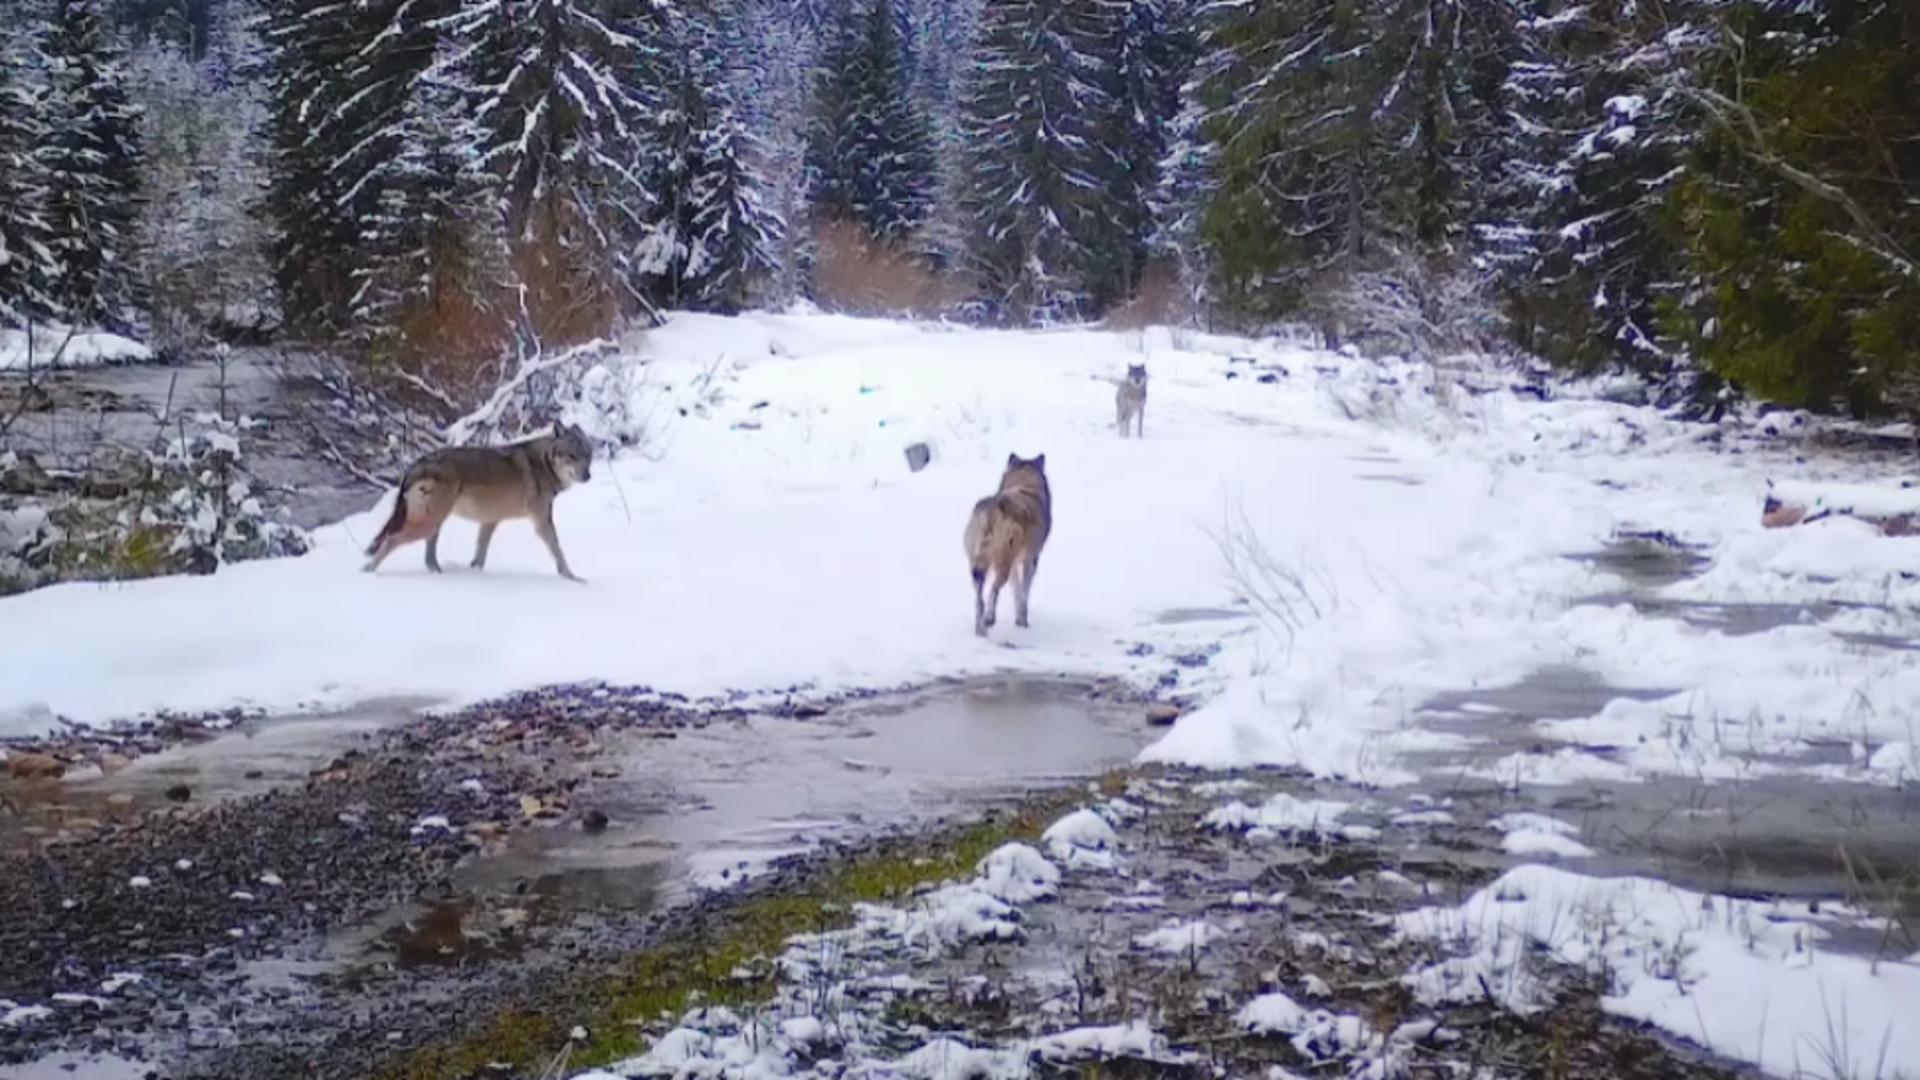 Haită de lupi, filmată pe un drum forestier din Munții Apuseni - Imagini inedite/ Captură video